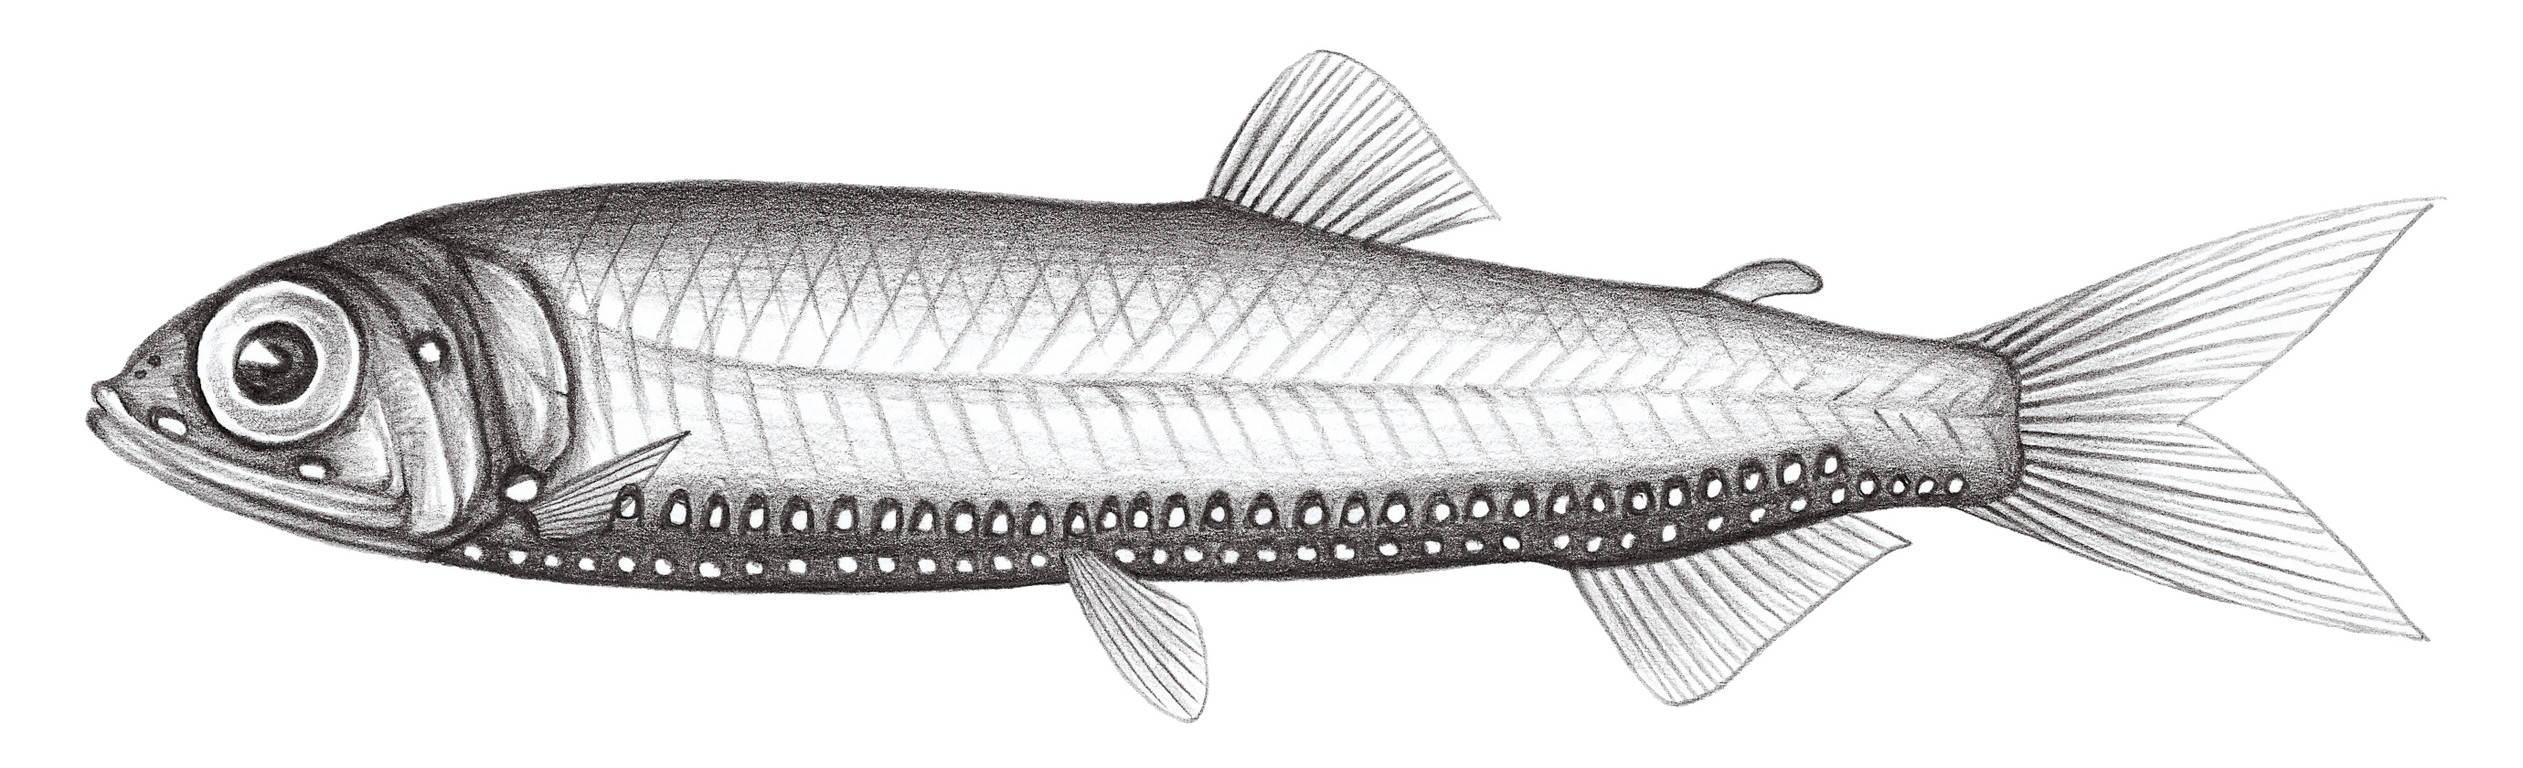 427.	伍氏光魚 Woodsia nonsuchae (Beebe, 1932)